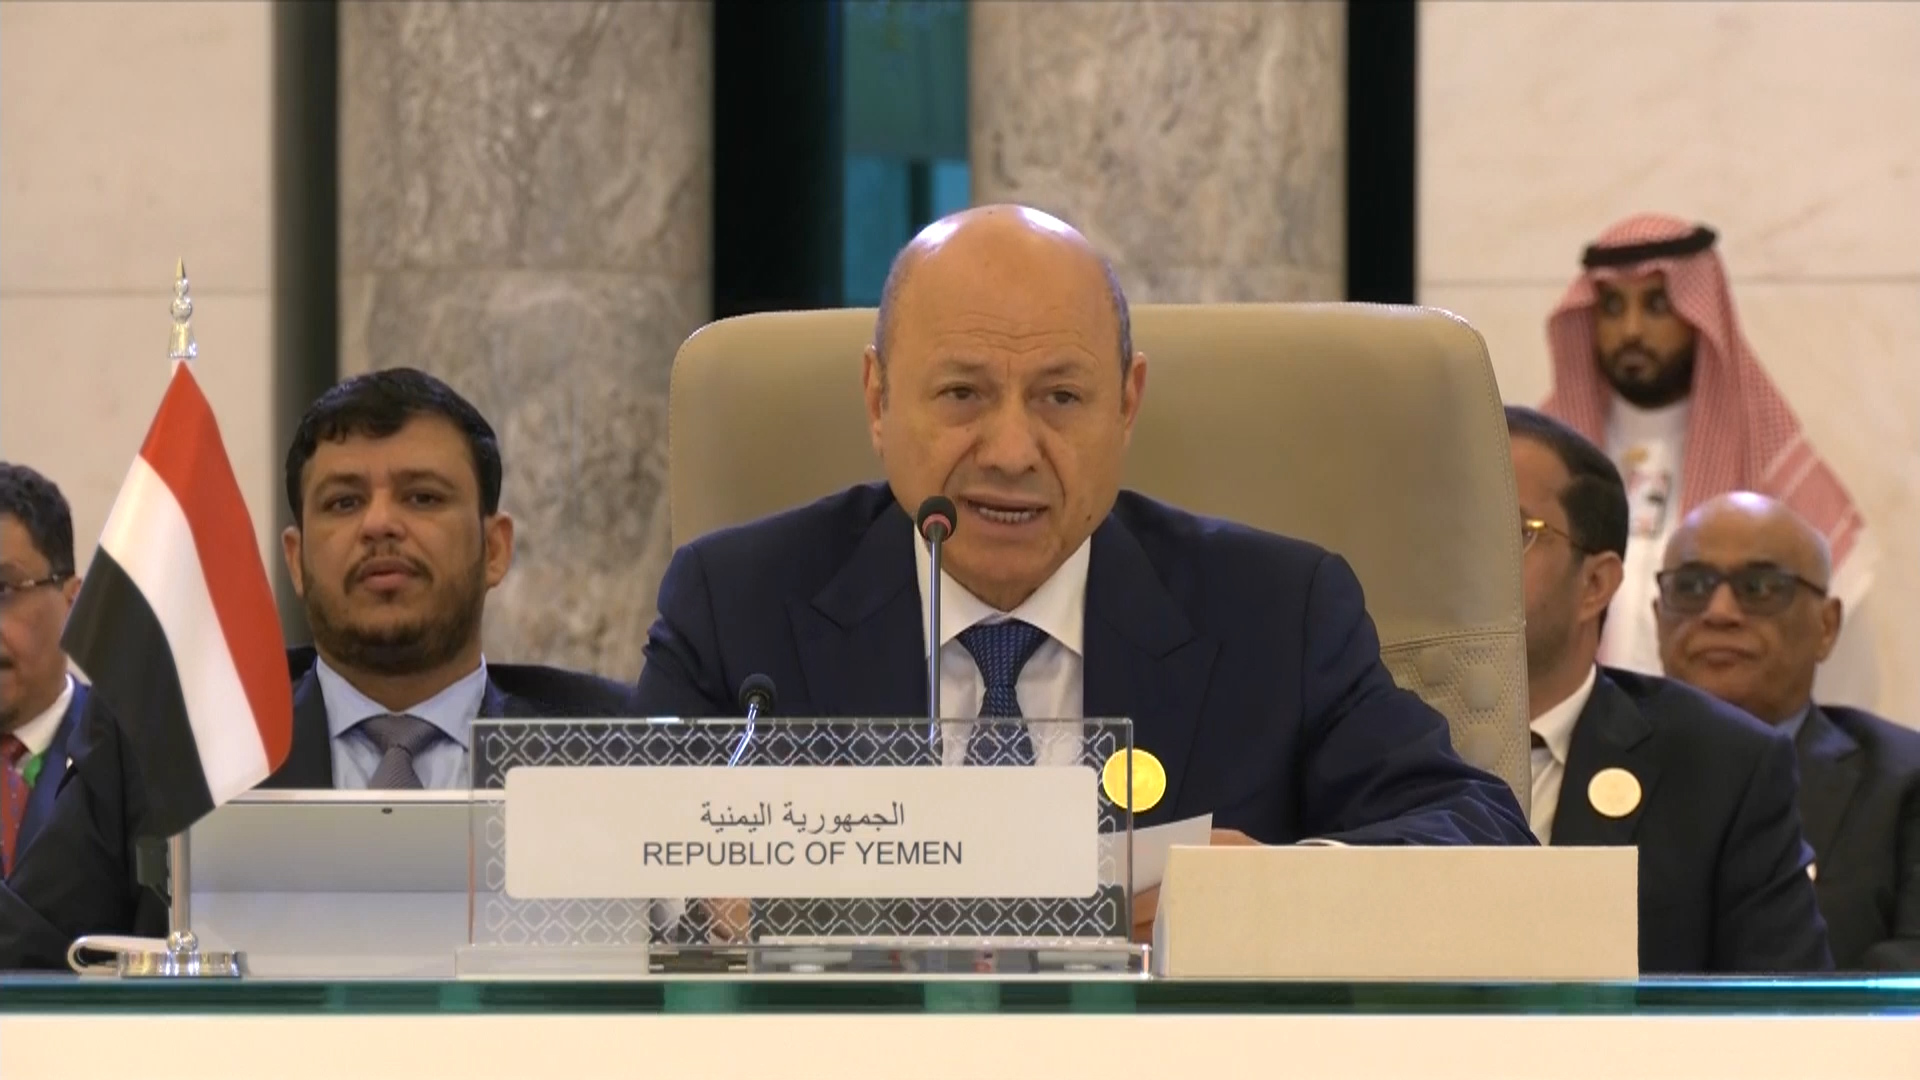 رئيس مجلس القيادة يدعو إلى تحرك عربي جماعي لوقف الانتهاكات الحوثية ودعم الجهود الحكومية لإنعاش الاقتصاد